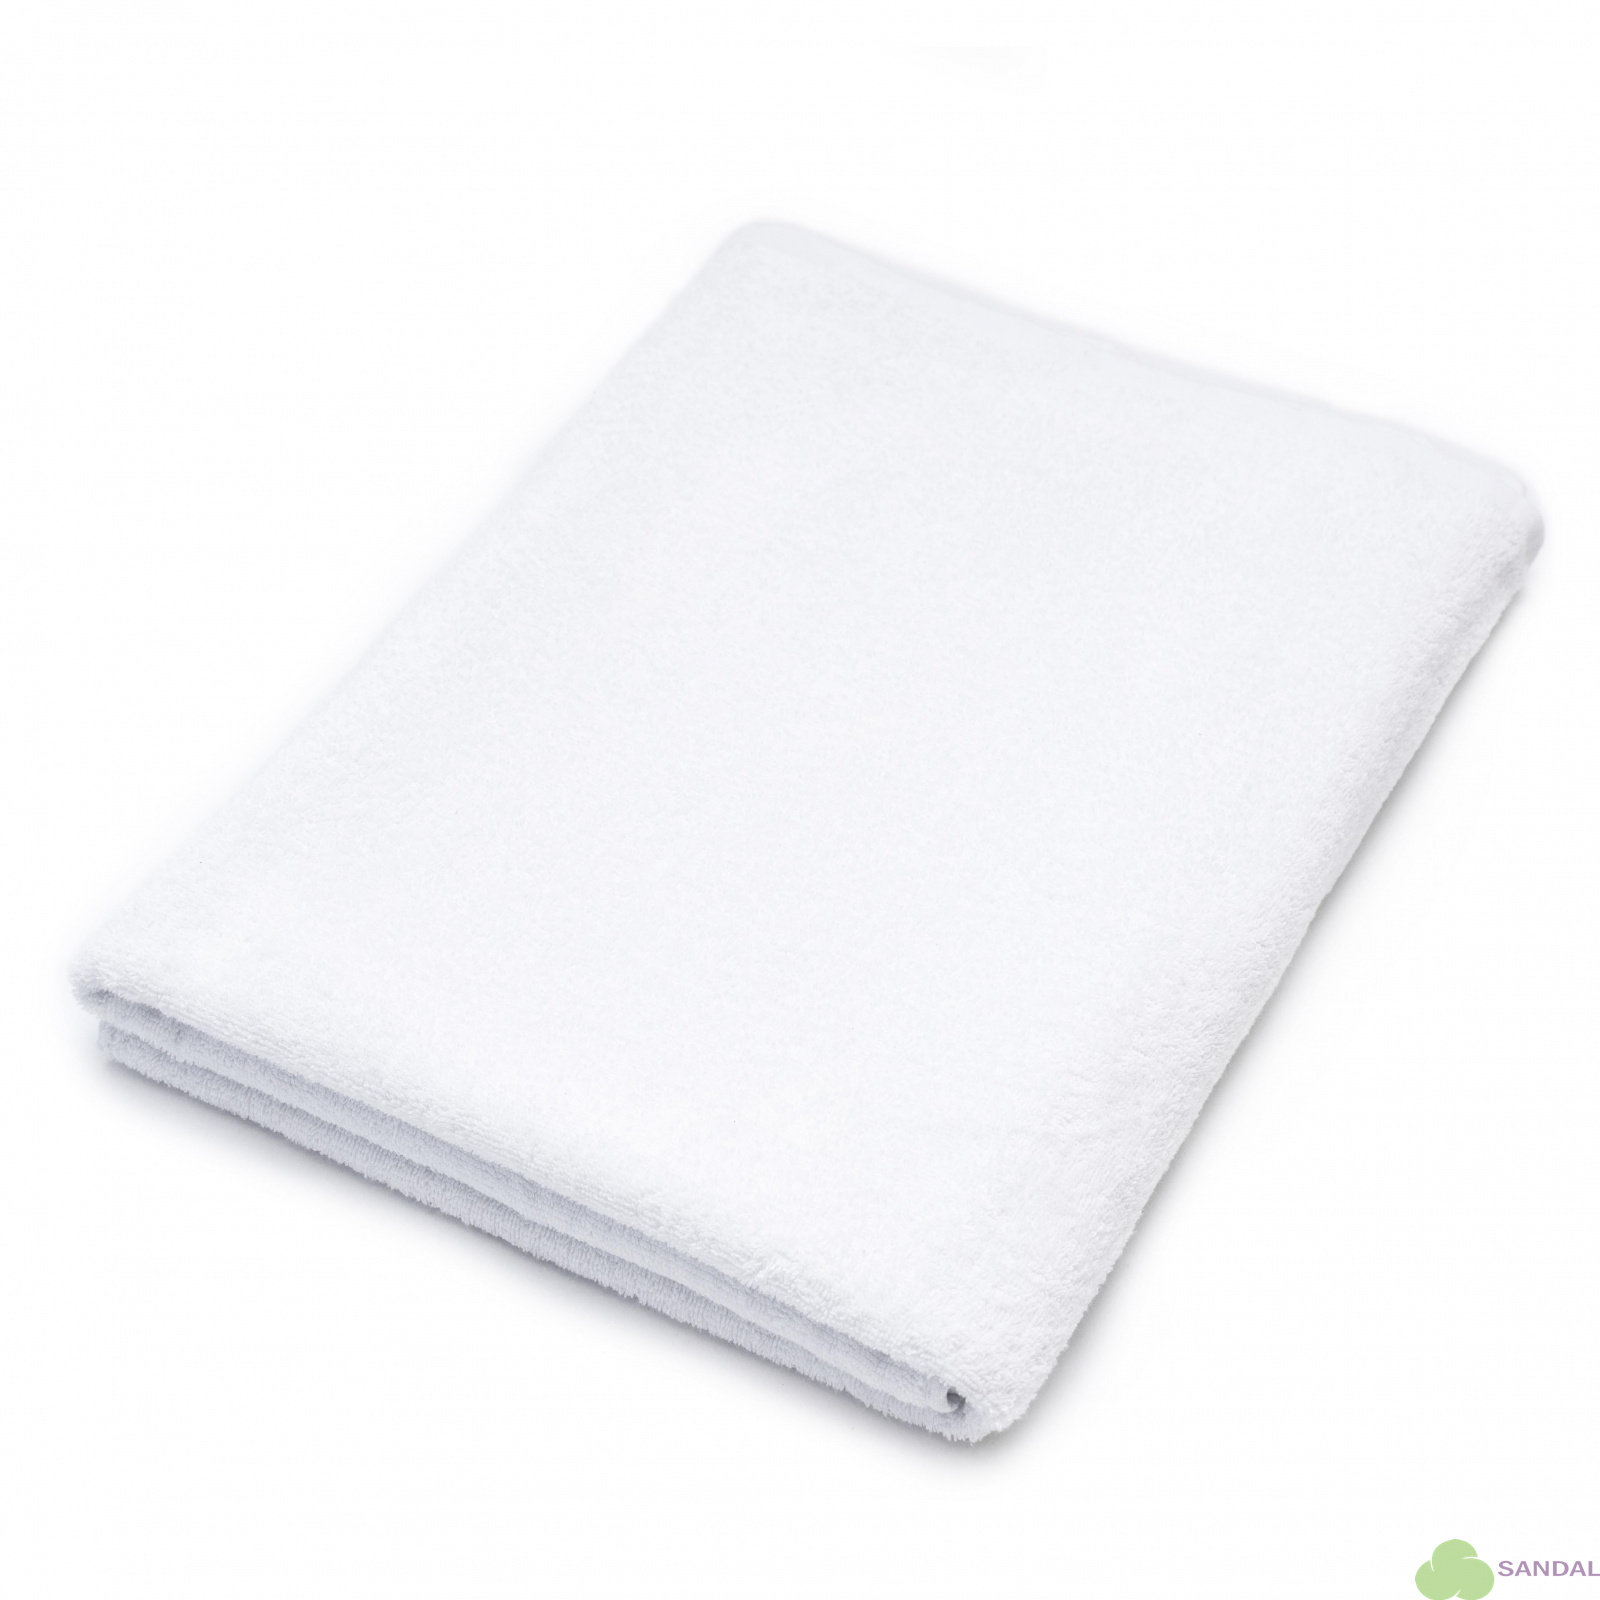 Махровое полотенце "пляжное" Sandal "оптима" 100*180 см., цвет - белый